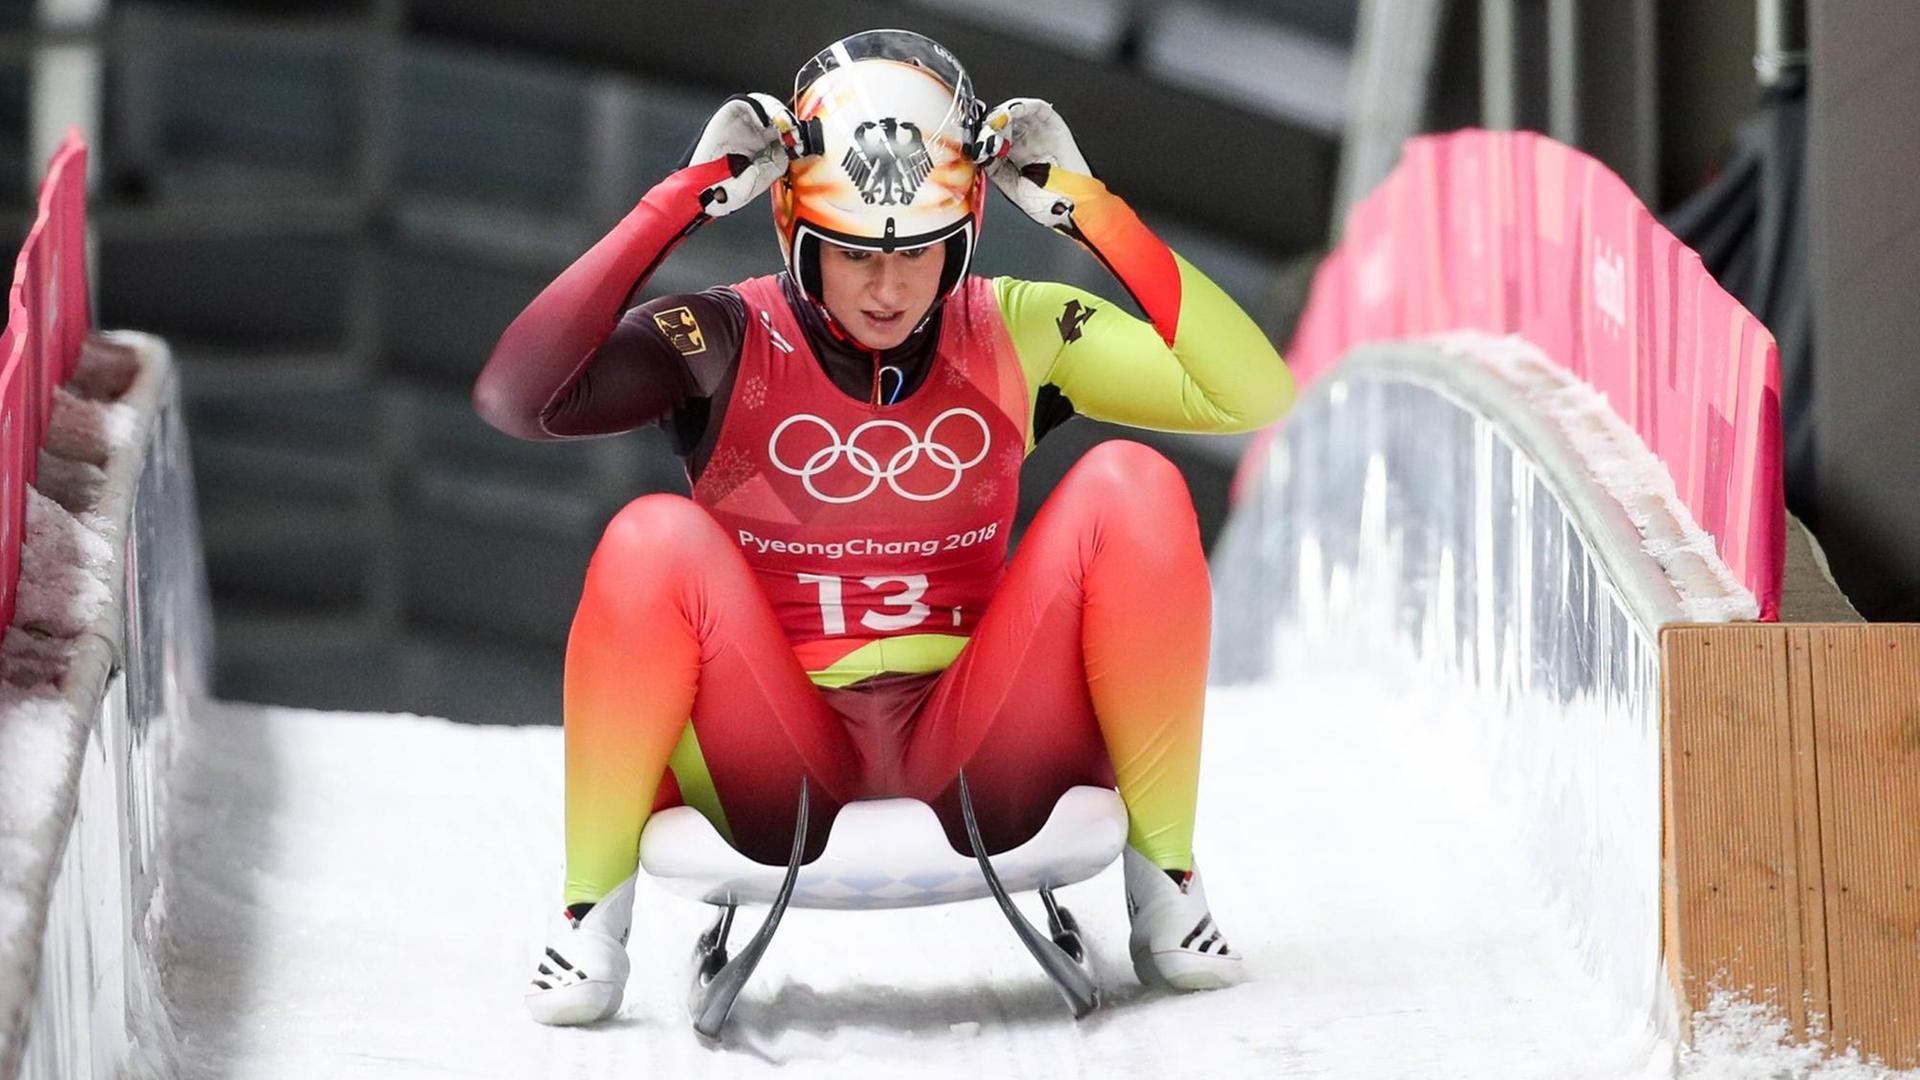 Natalie Geisenberger, Goldmedaillengewinnerin der Olympischen Winterspiele von Pyeongchang 2018